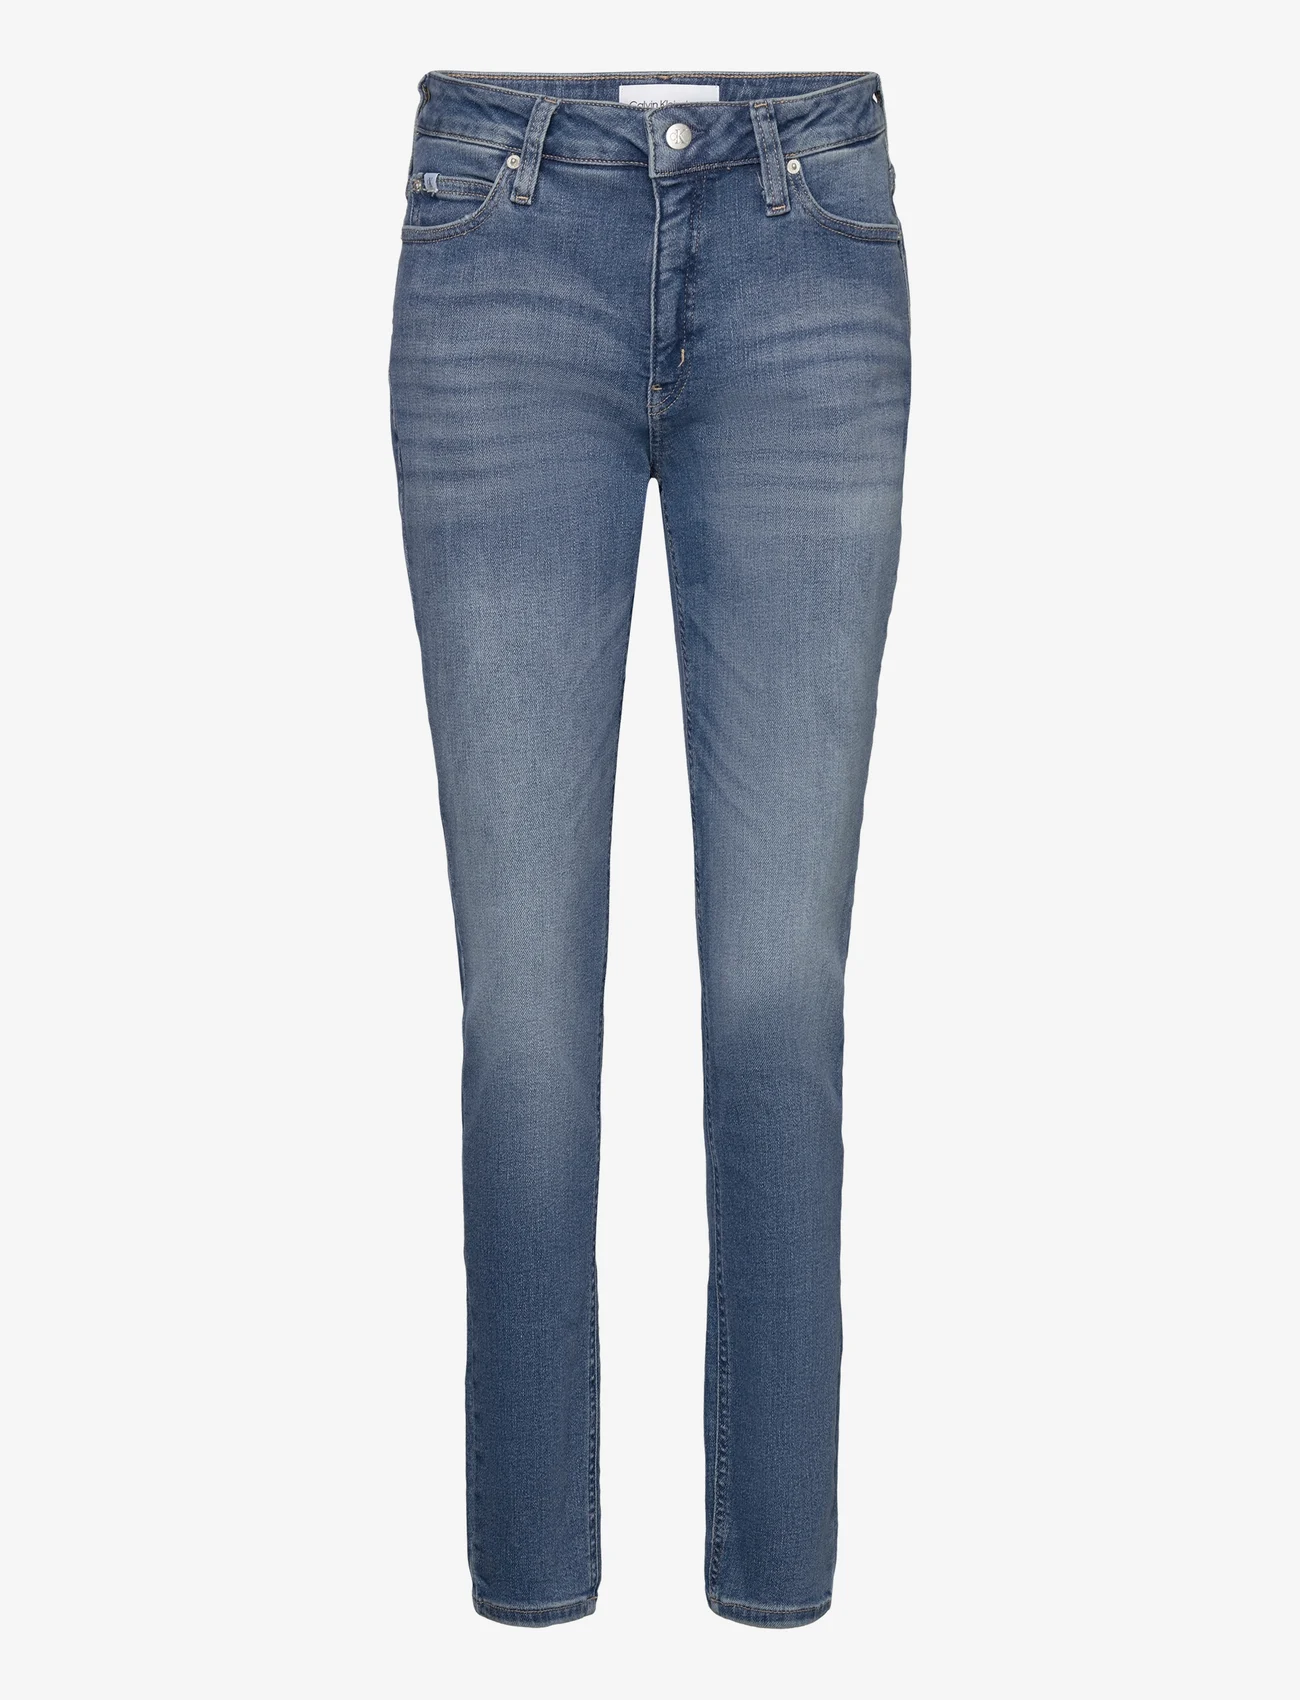 Calvin Klein Jeans - MID RISE SKINNY - pillifarkut - denim medium - 0